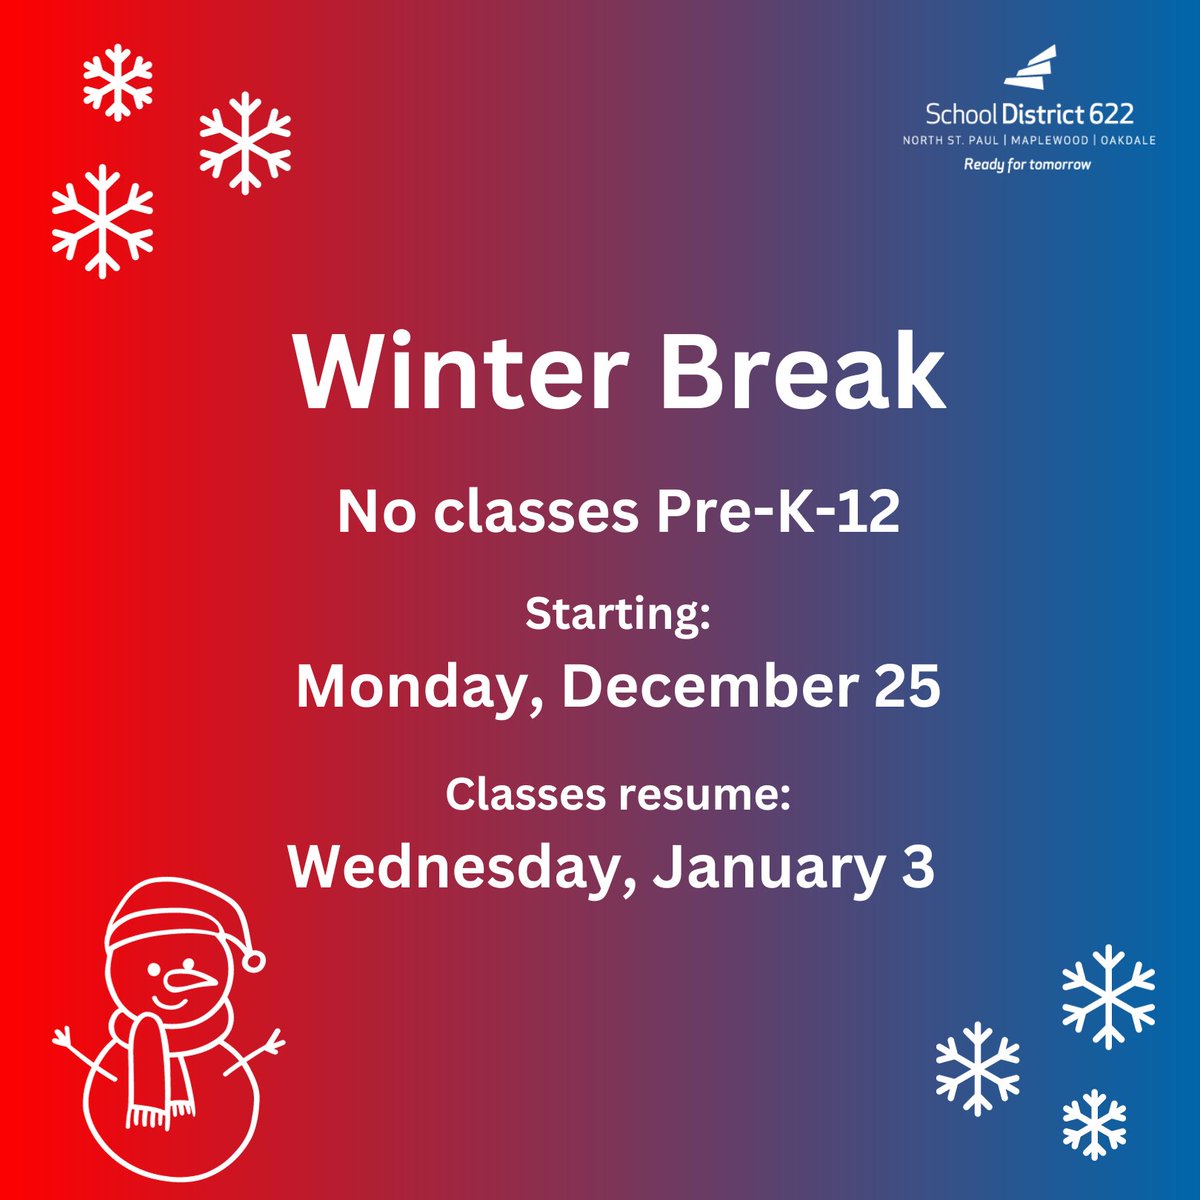 Winter break begins on Monday, December 25. Classes will resume on Wednesday, January 3. Enjoy your break!